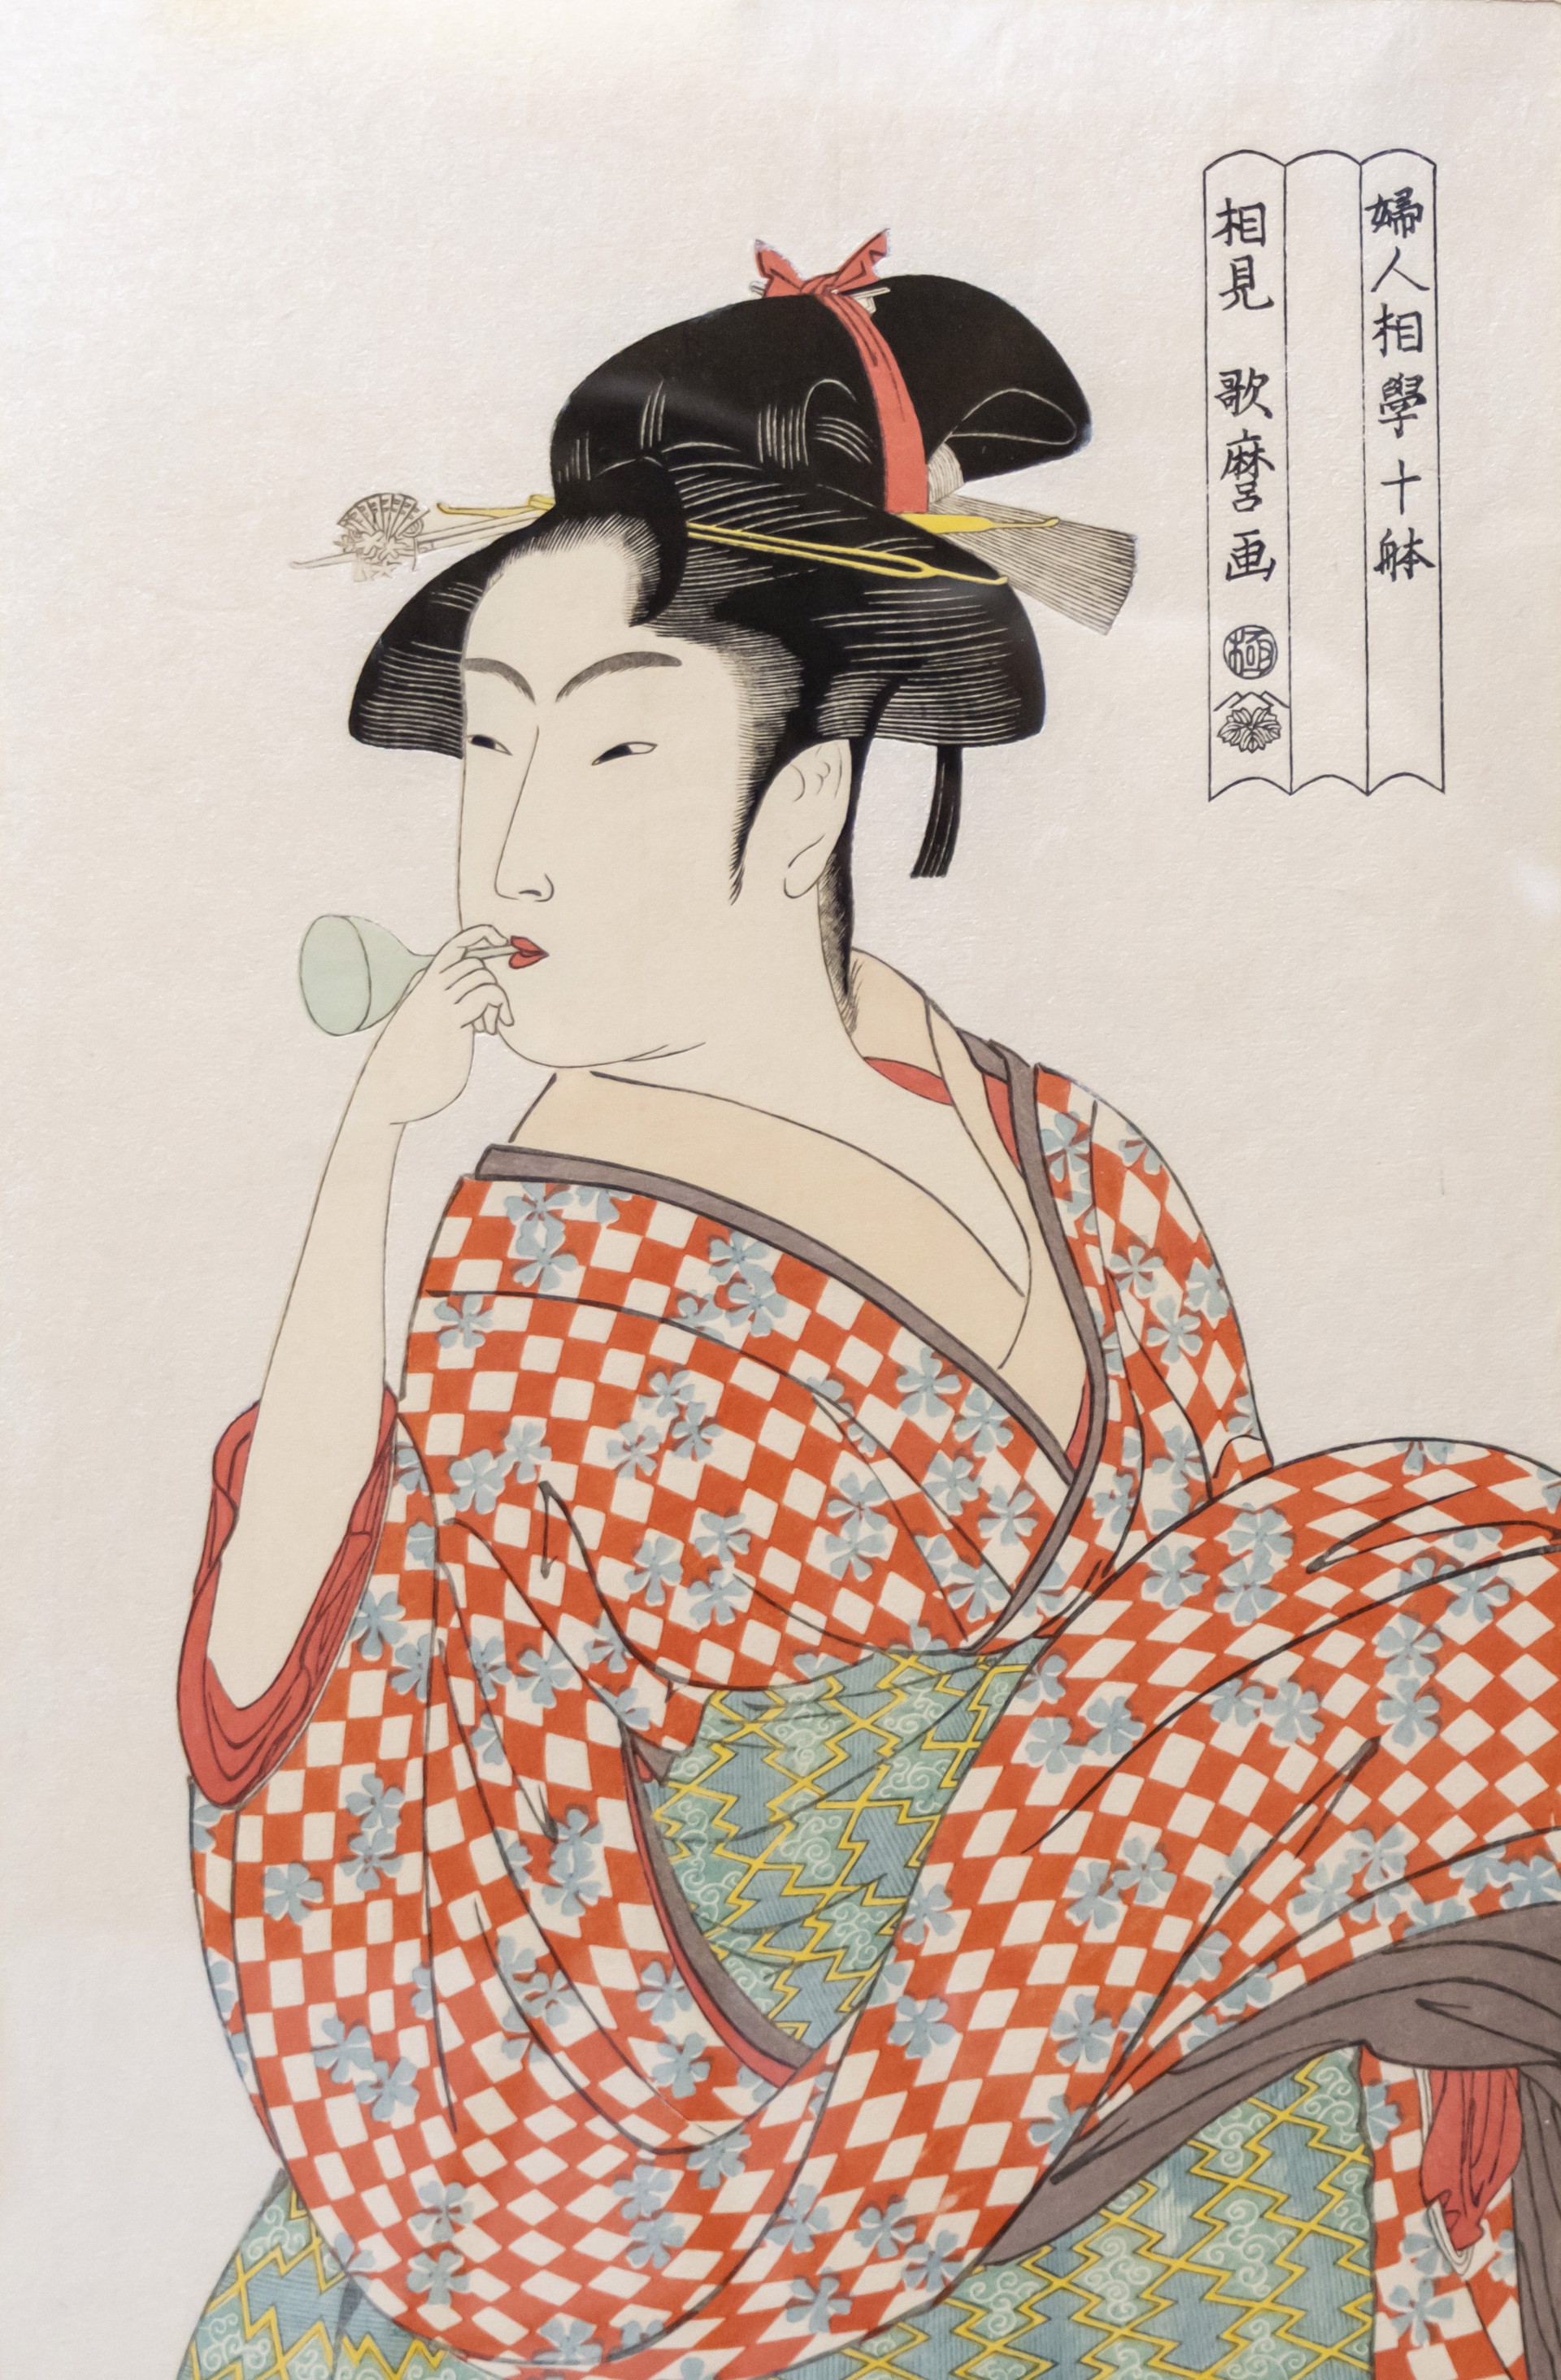 妇⼈相学拾躰 吹“噗乒”的⼥⼦ by 喜多川歌麿 Kitagawa Utamaro